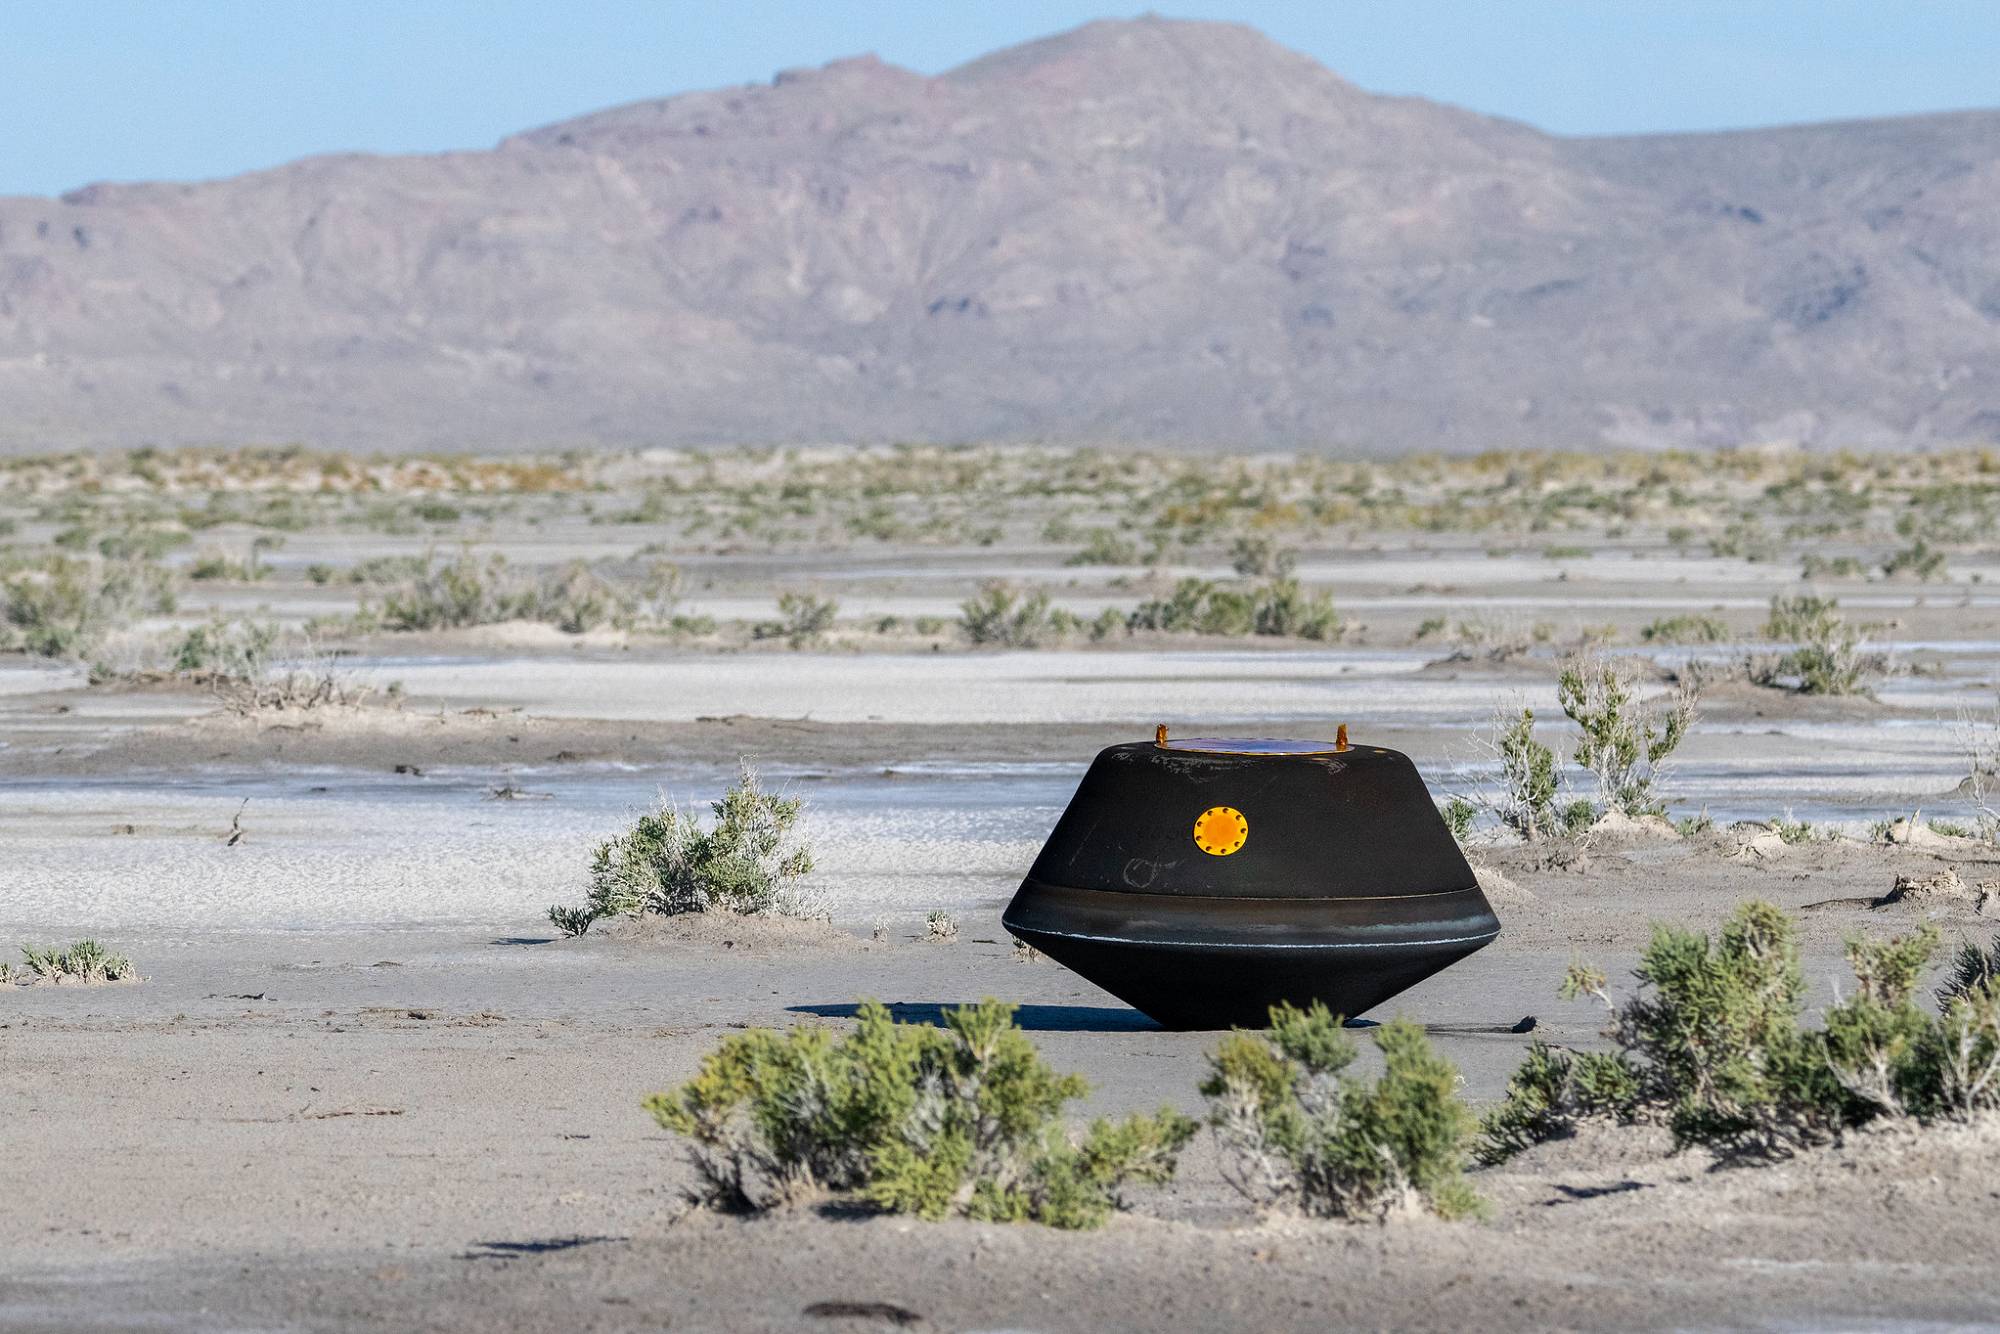 داستان ماموریت اسیریس رکس؛ ناسا چگونه خاک سیارک بنو را به زمین آورد؟